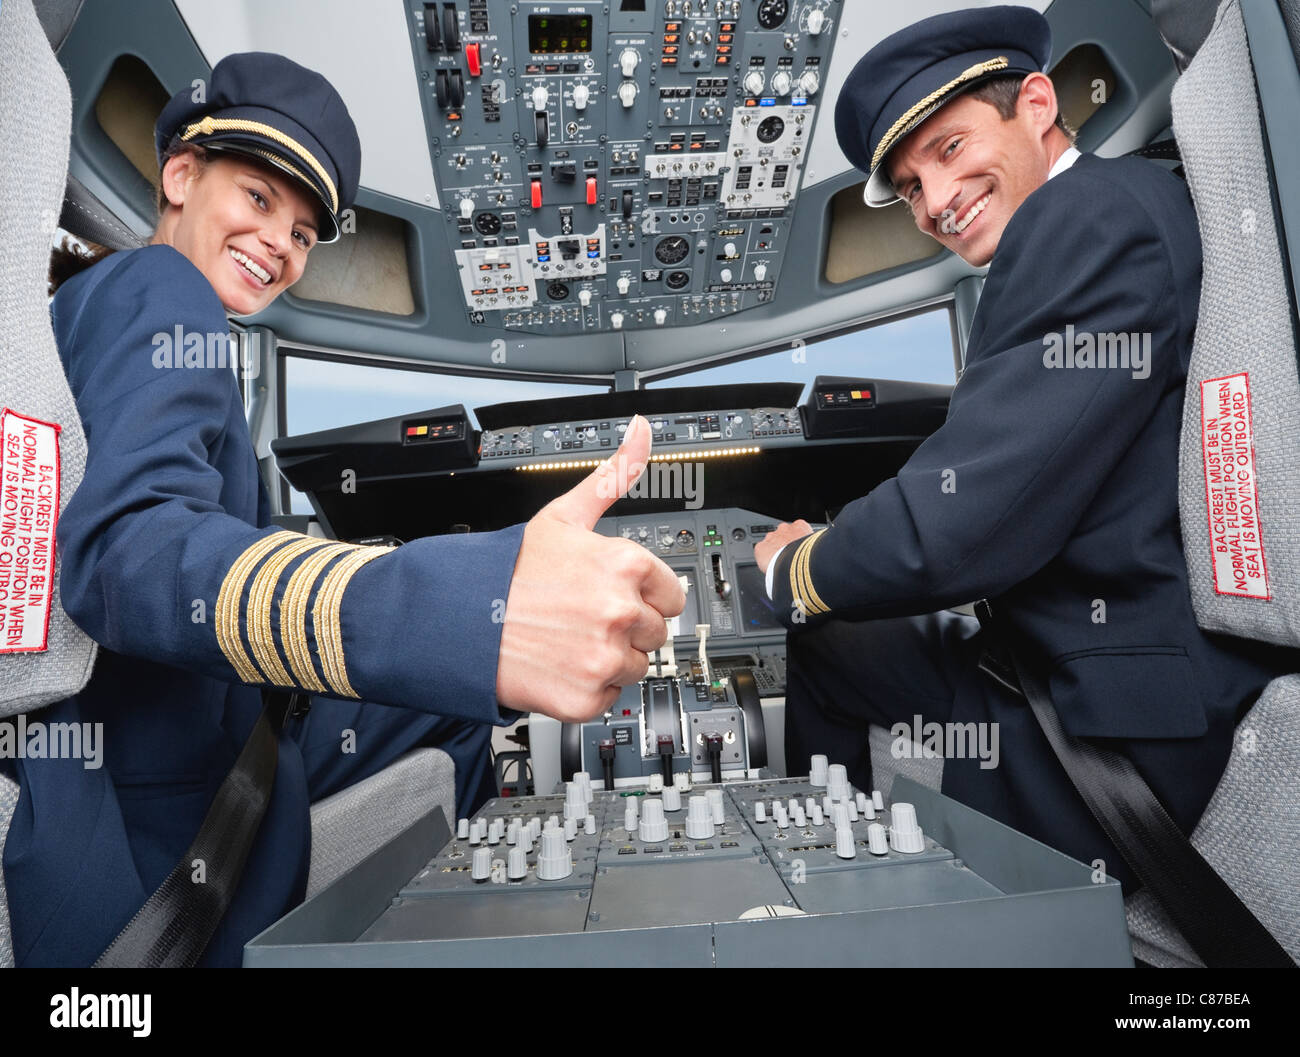 Deutschland, Bayern, München, Pilot und Kopilot Pilotierung Flugzeug aus Flugzeug-cockpit Stockfoto